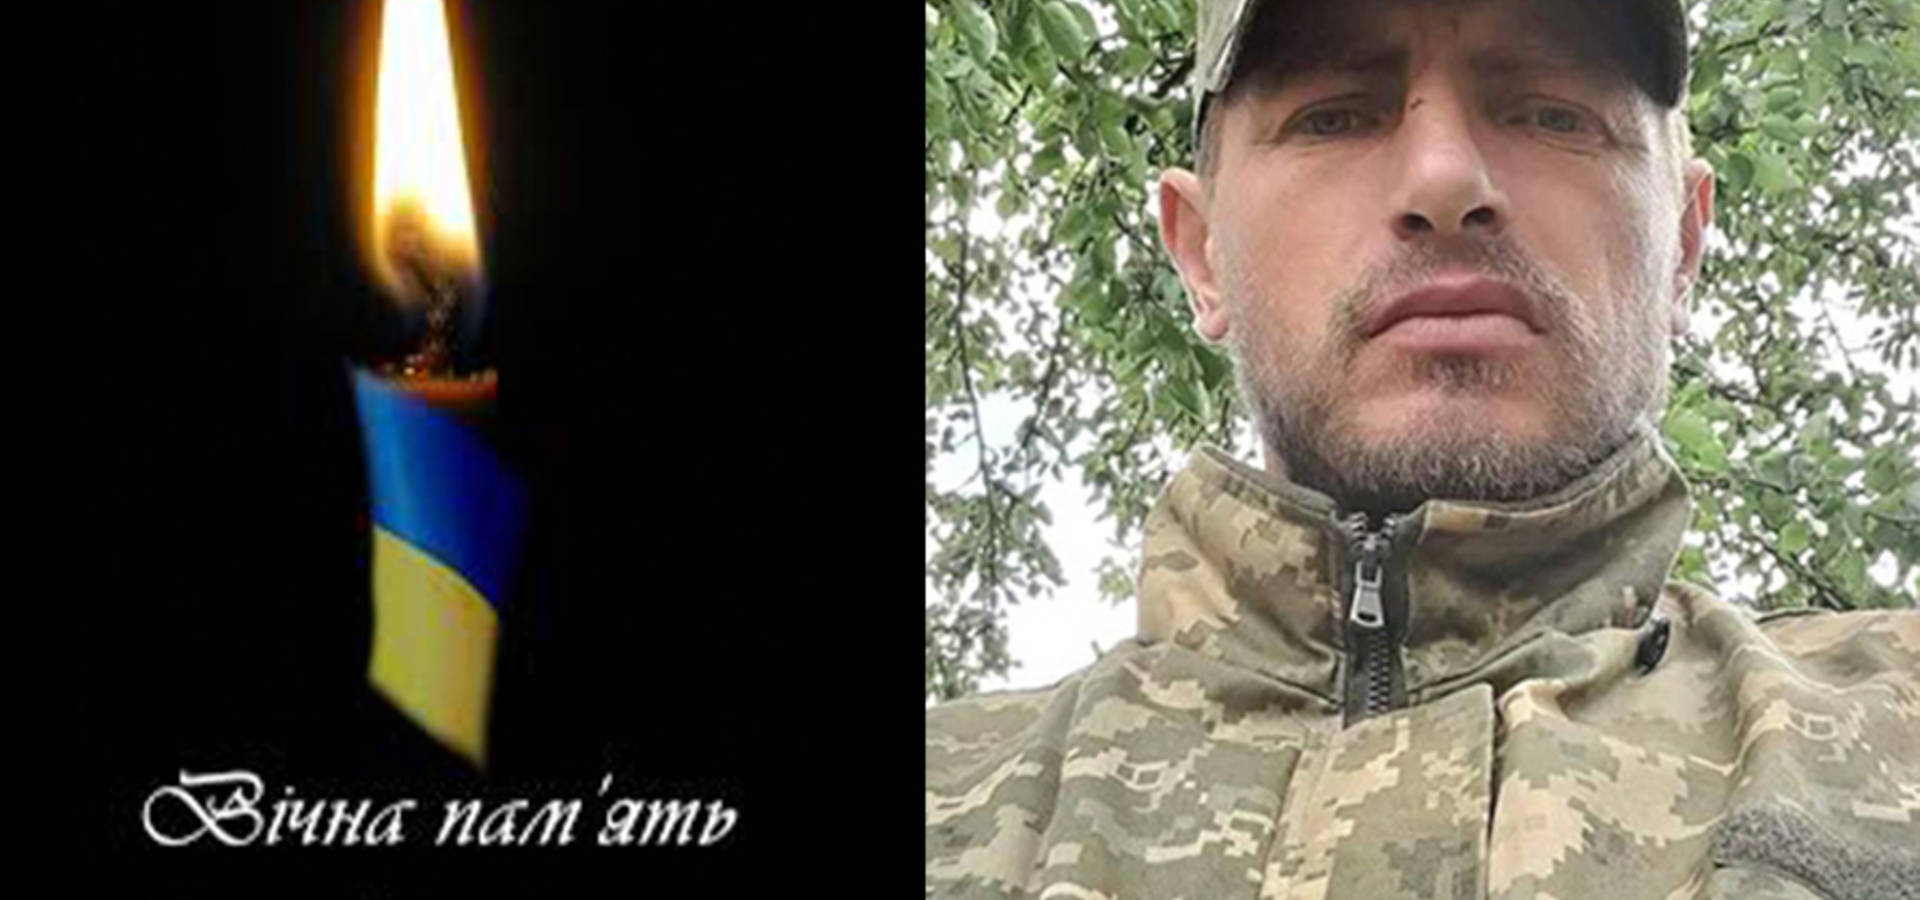 Сьогодні до рідного дому у Хмільник "на щиті" повертається захисник України Руслан Москаленко